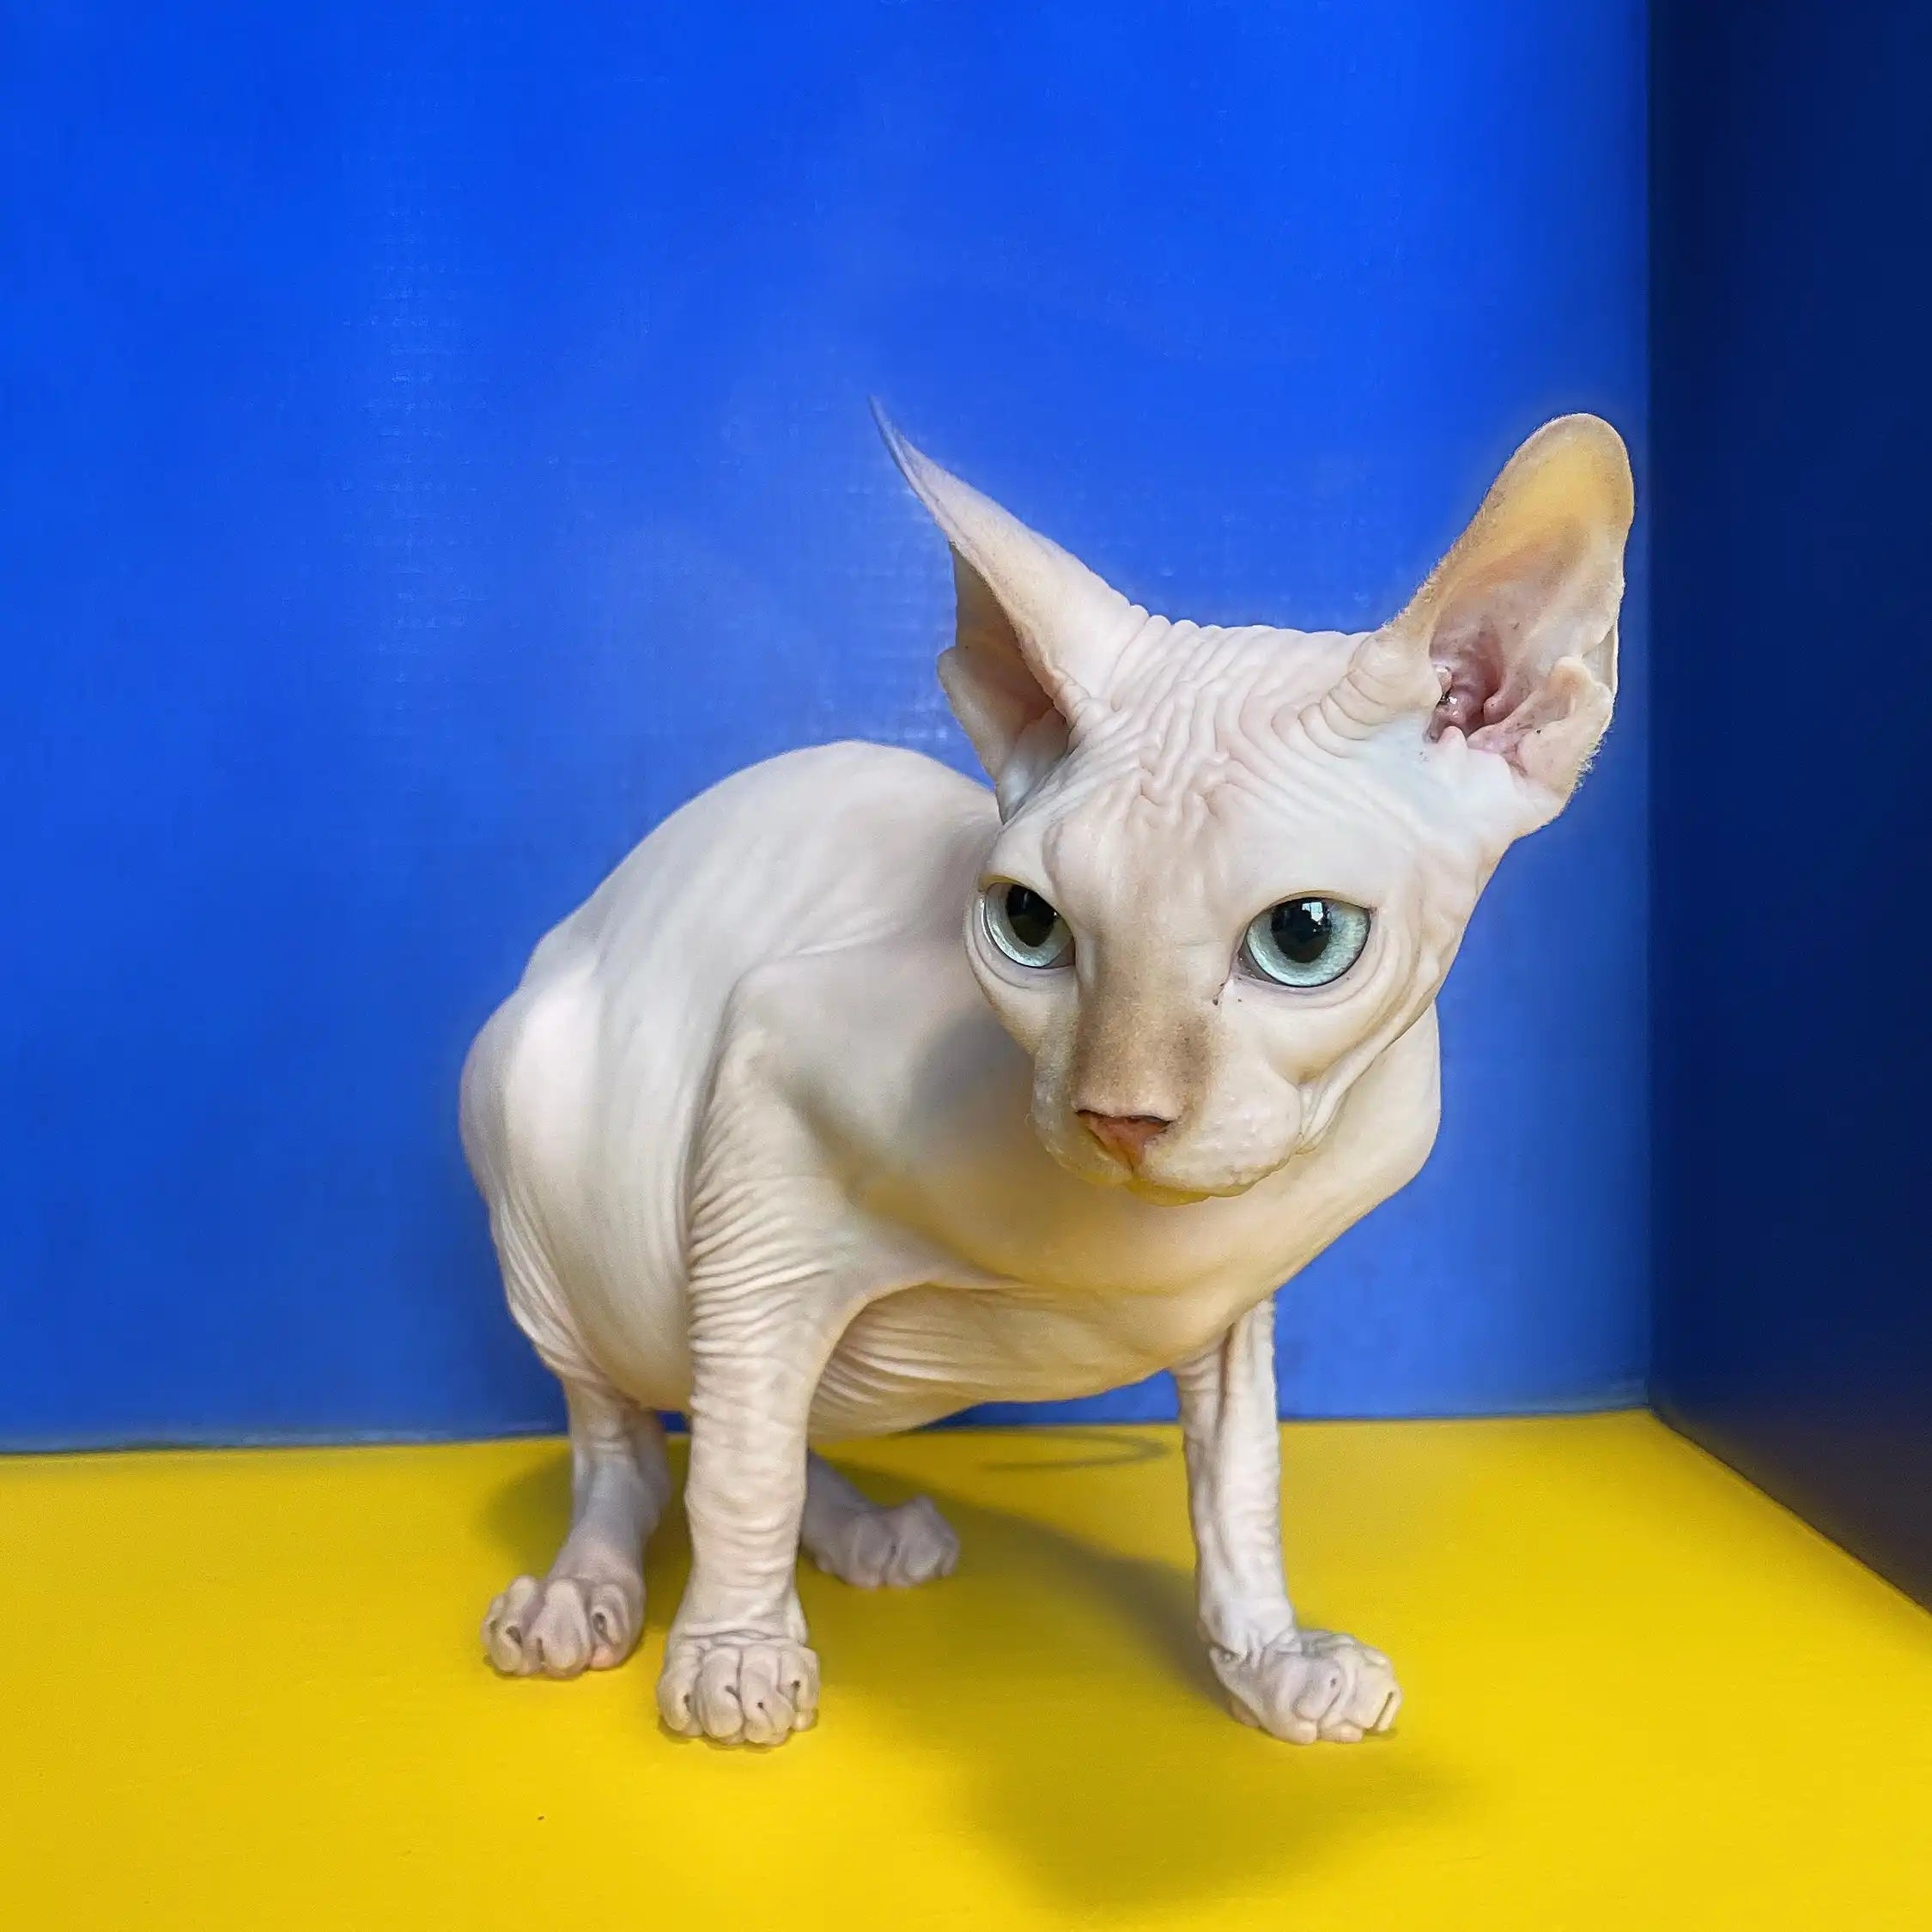 Sphynx Cats for Sale | Kittens For Oswaldo | Kitten